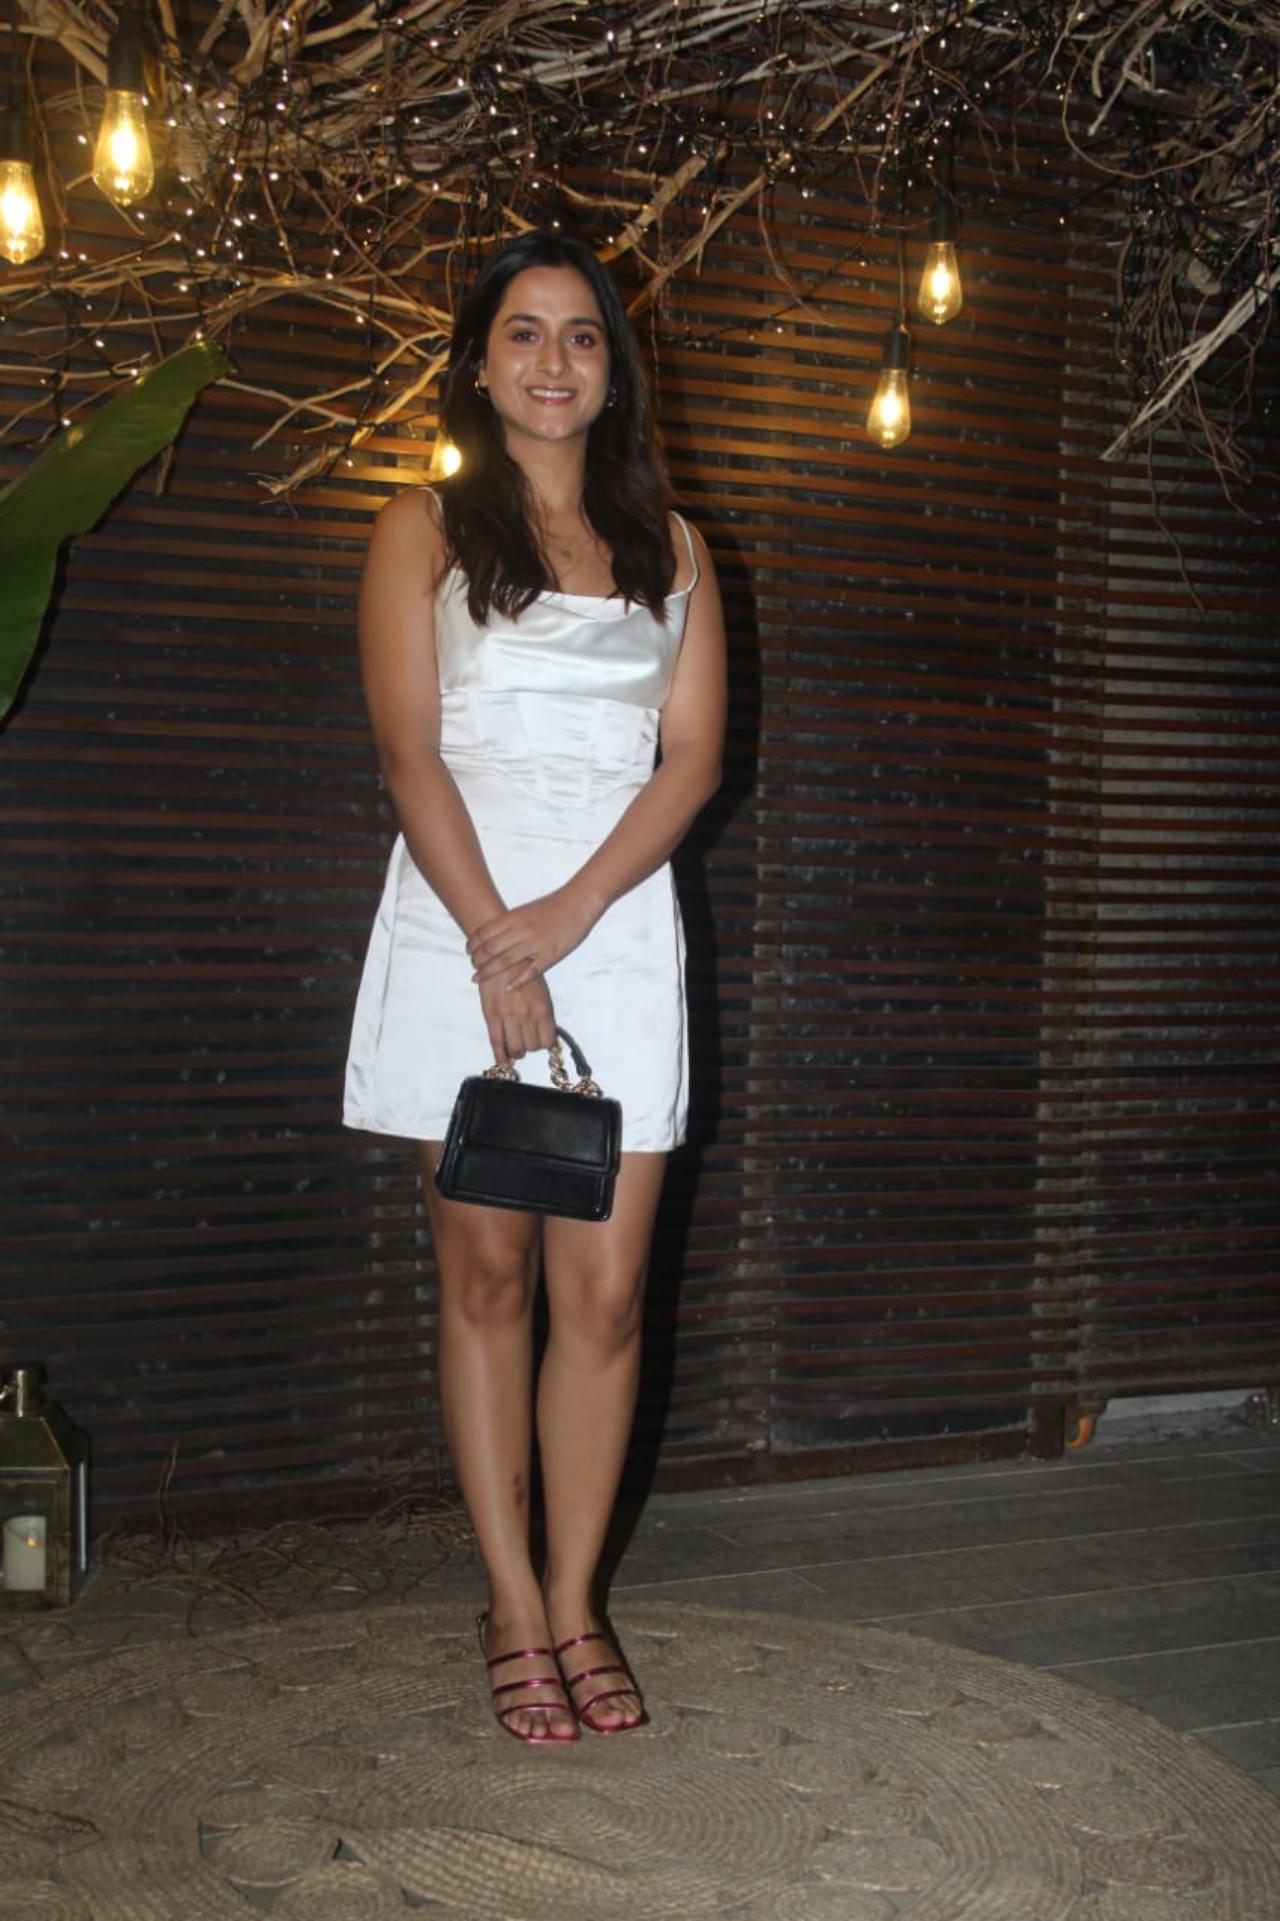 Kartik's Love Aaj Kal co-star Arushi Sharma looked effortlessly beautiful in a simple white dress